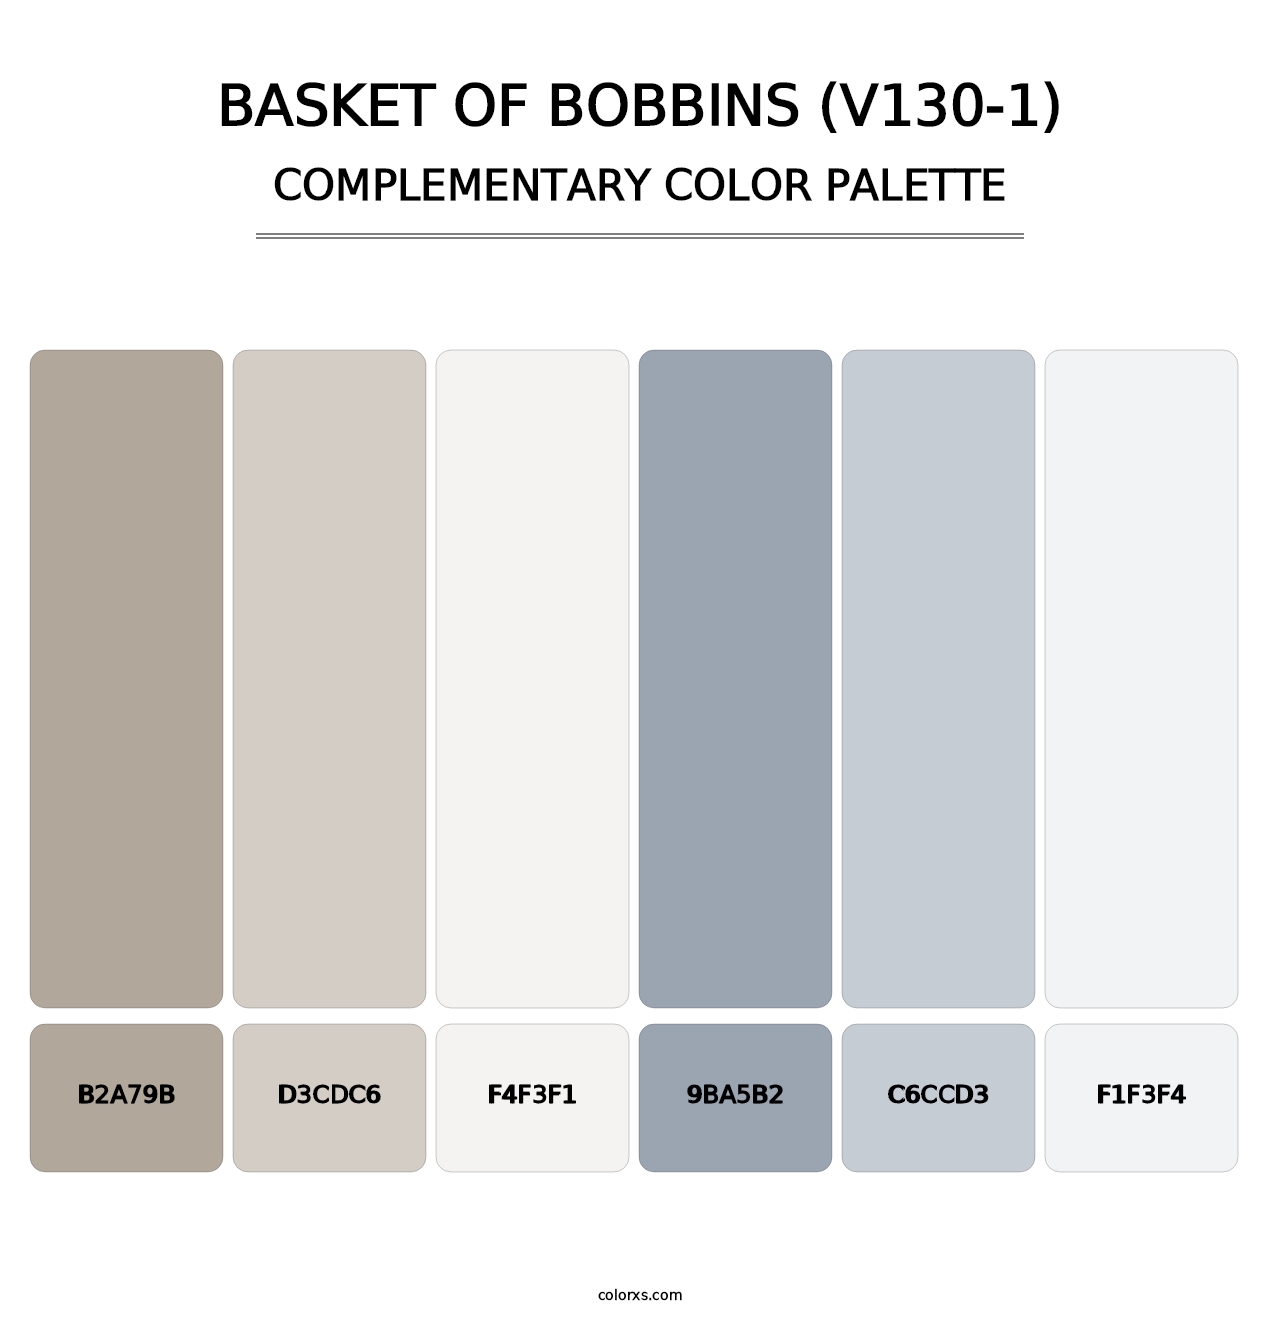 Basket of Bobbins (V130-1) - Complementary Color Palette